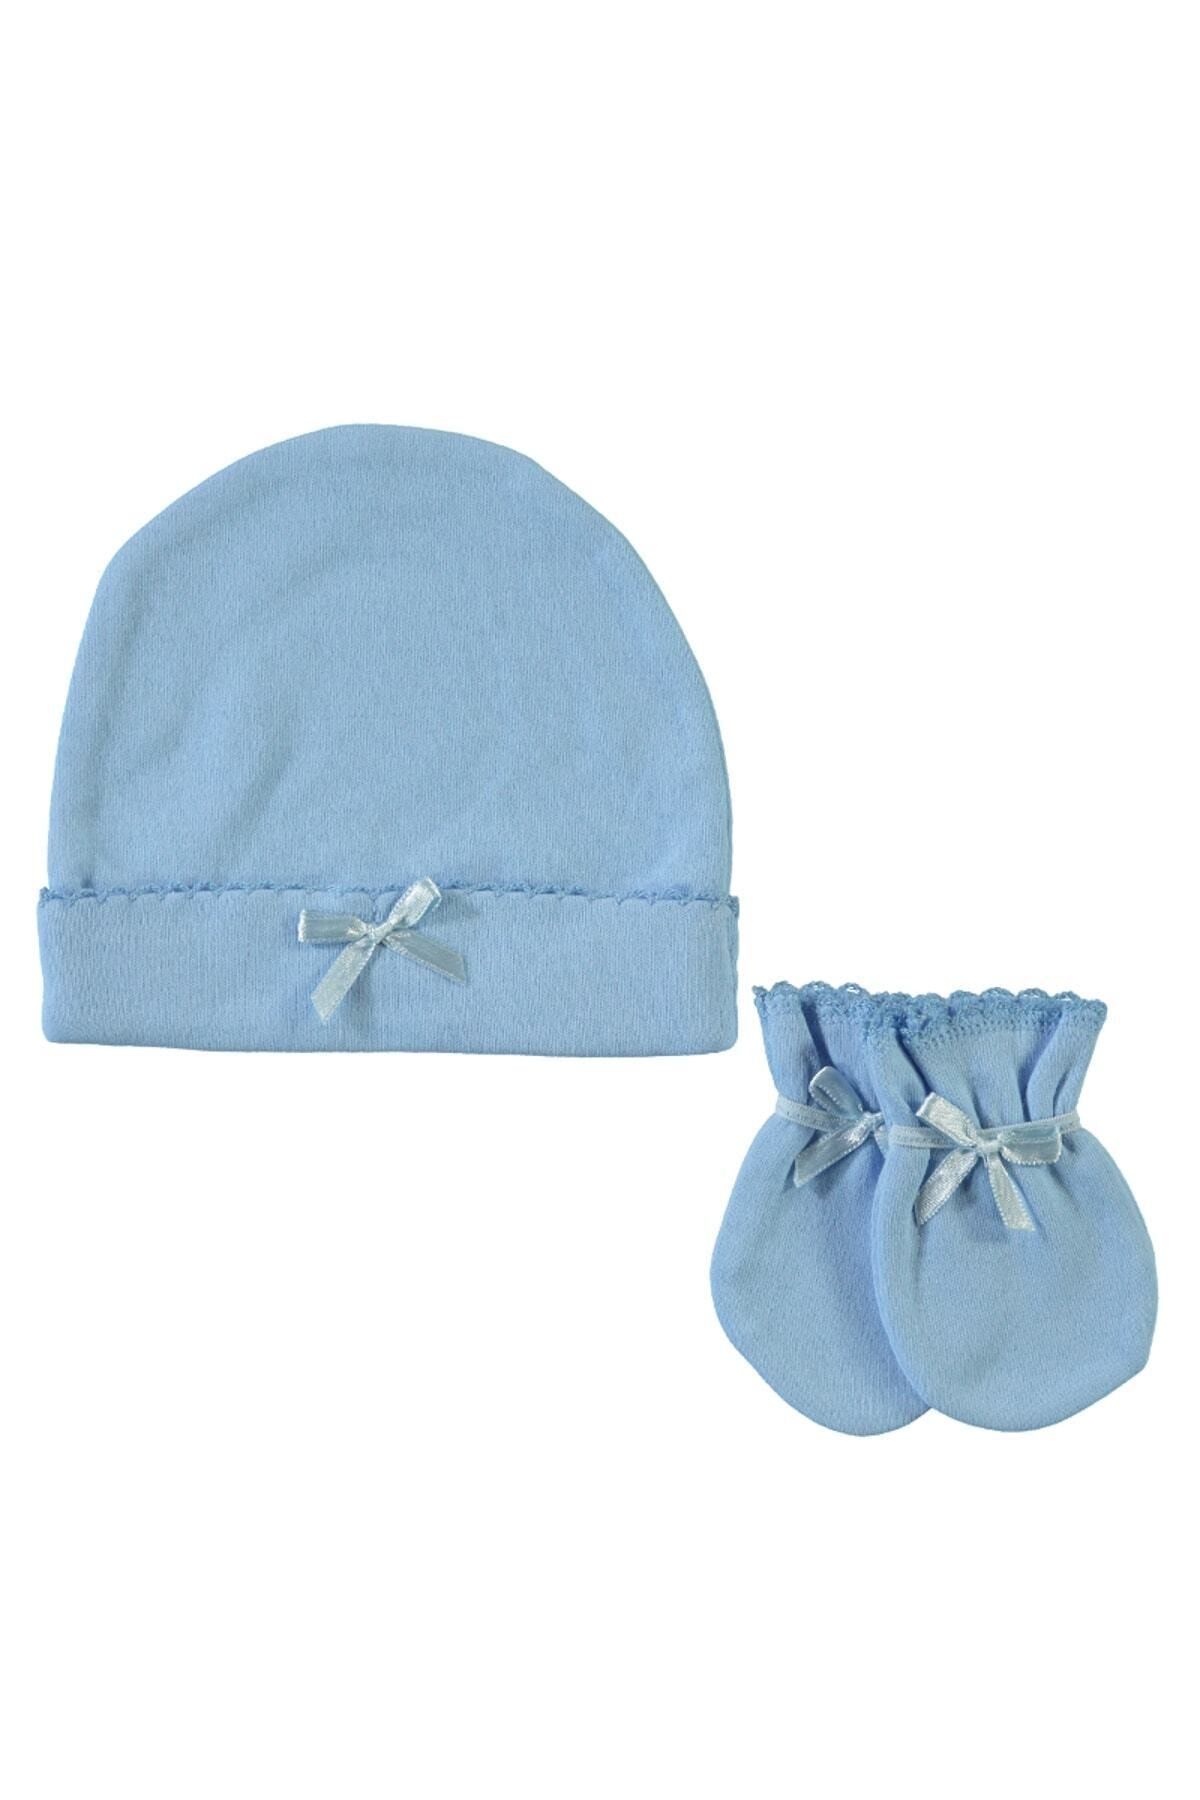 Sevi Bebe Mavi Bebek Şapka Eldiven Takımı